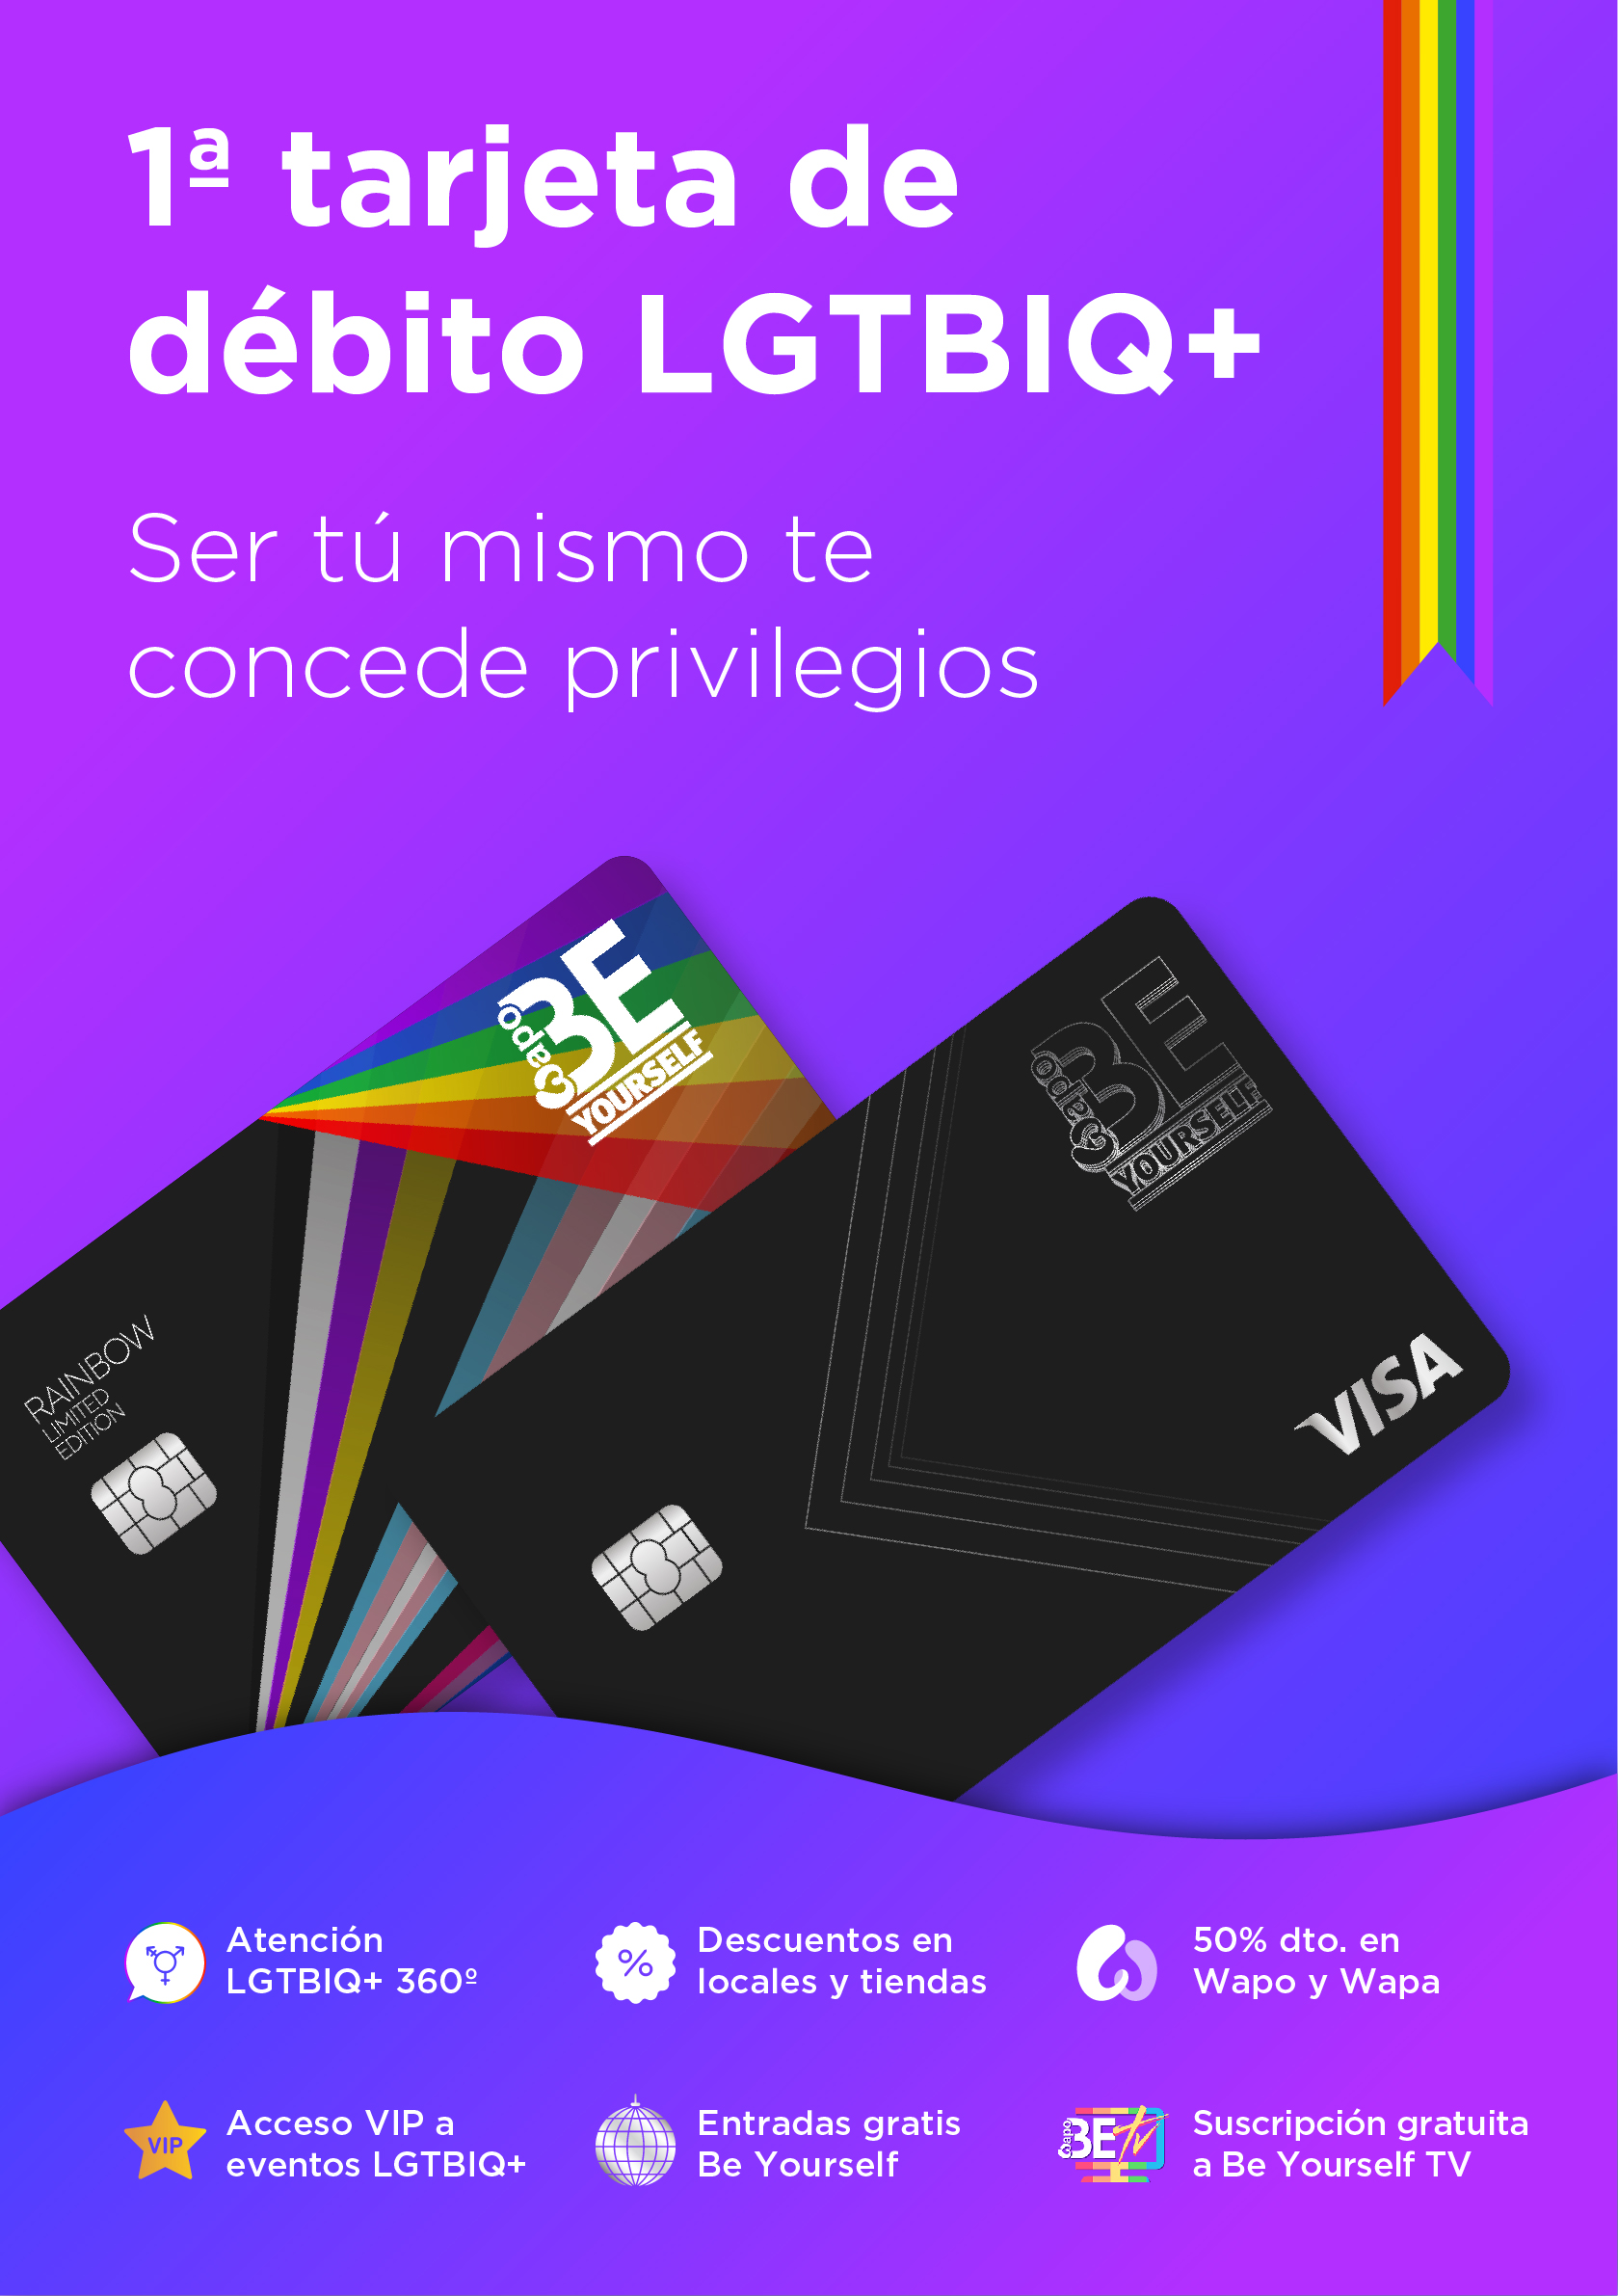 Be Yourself Cards: el sistema de pago especializado en el colectivo LGTBI con numerosos servicios y beneficios